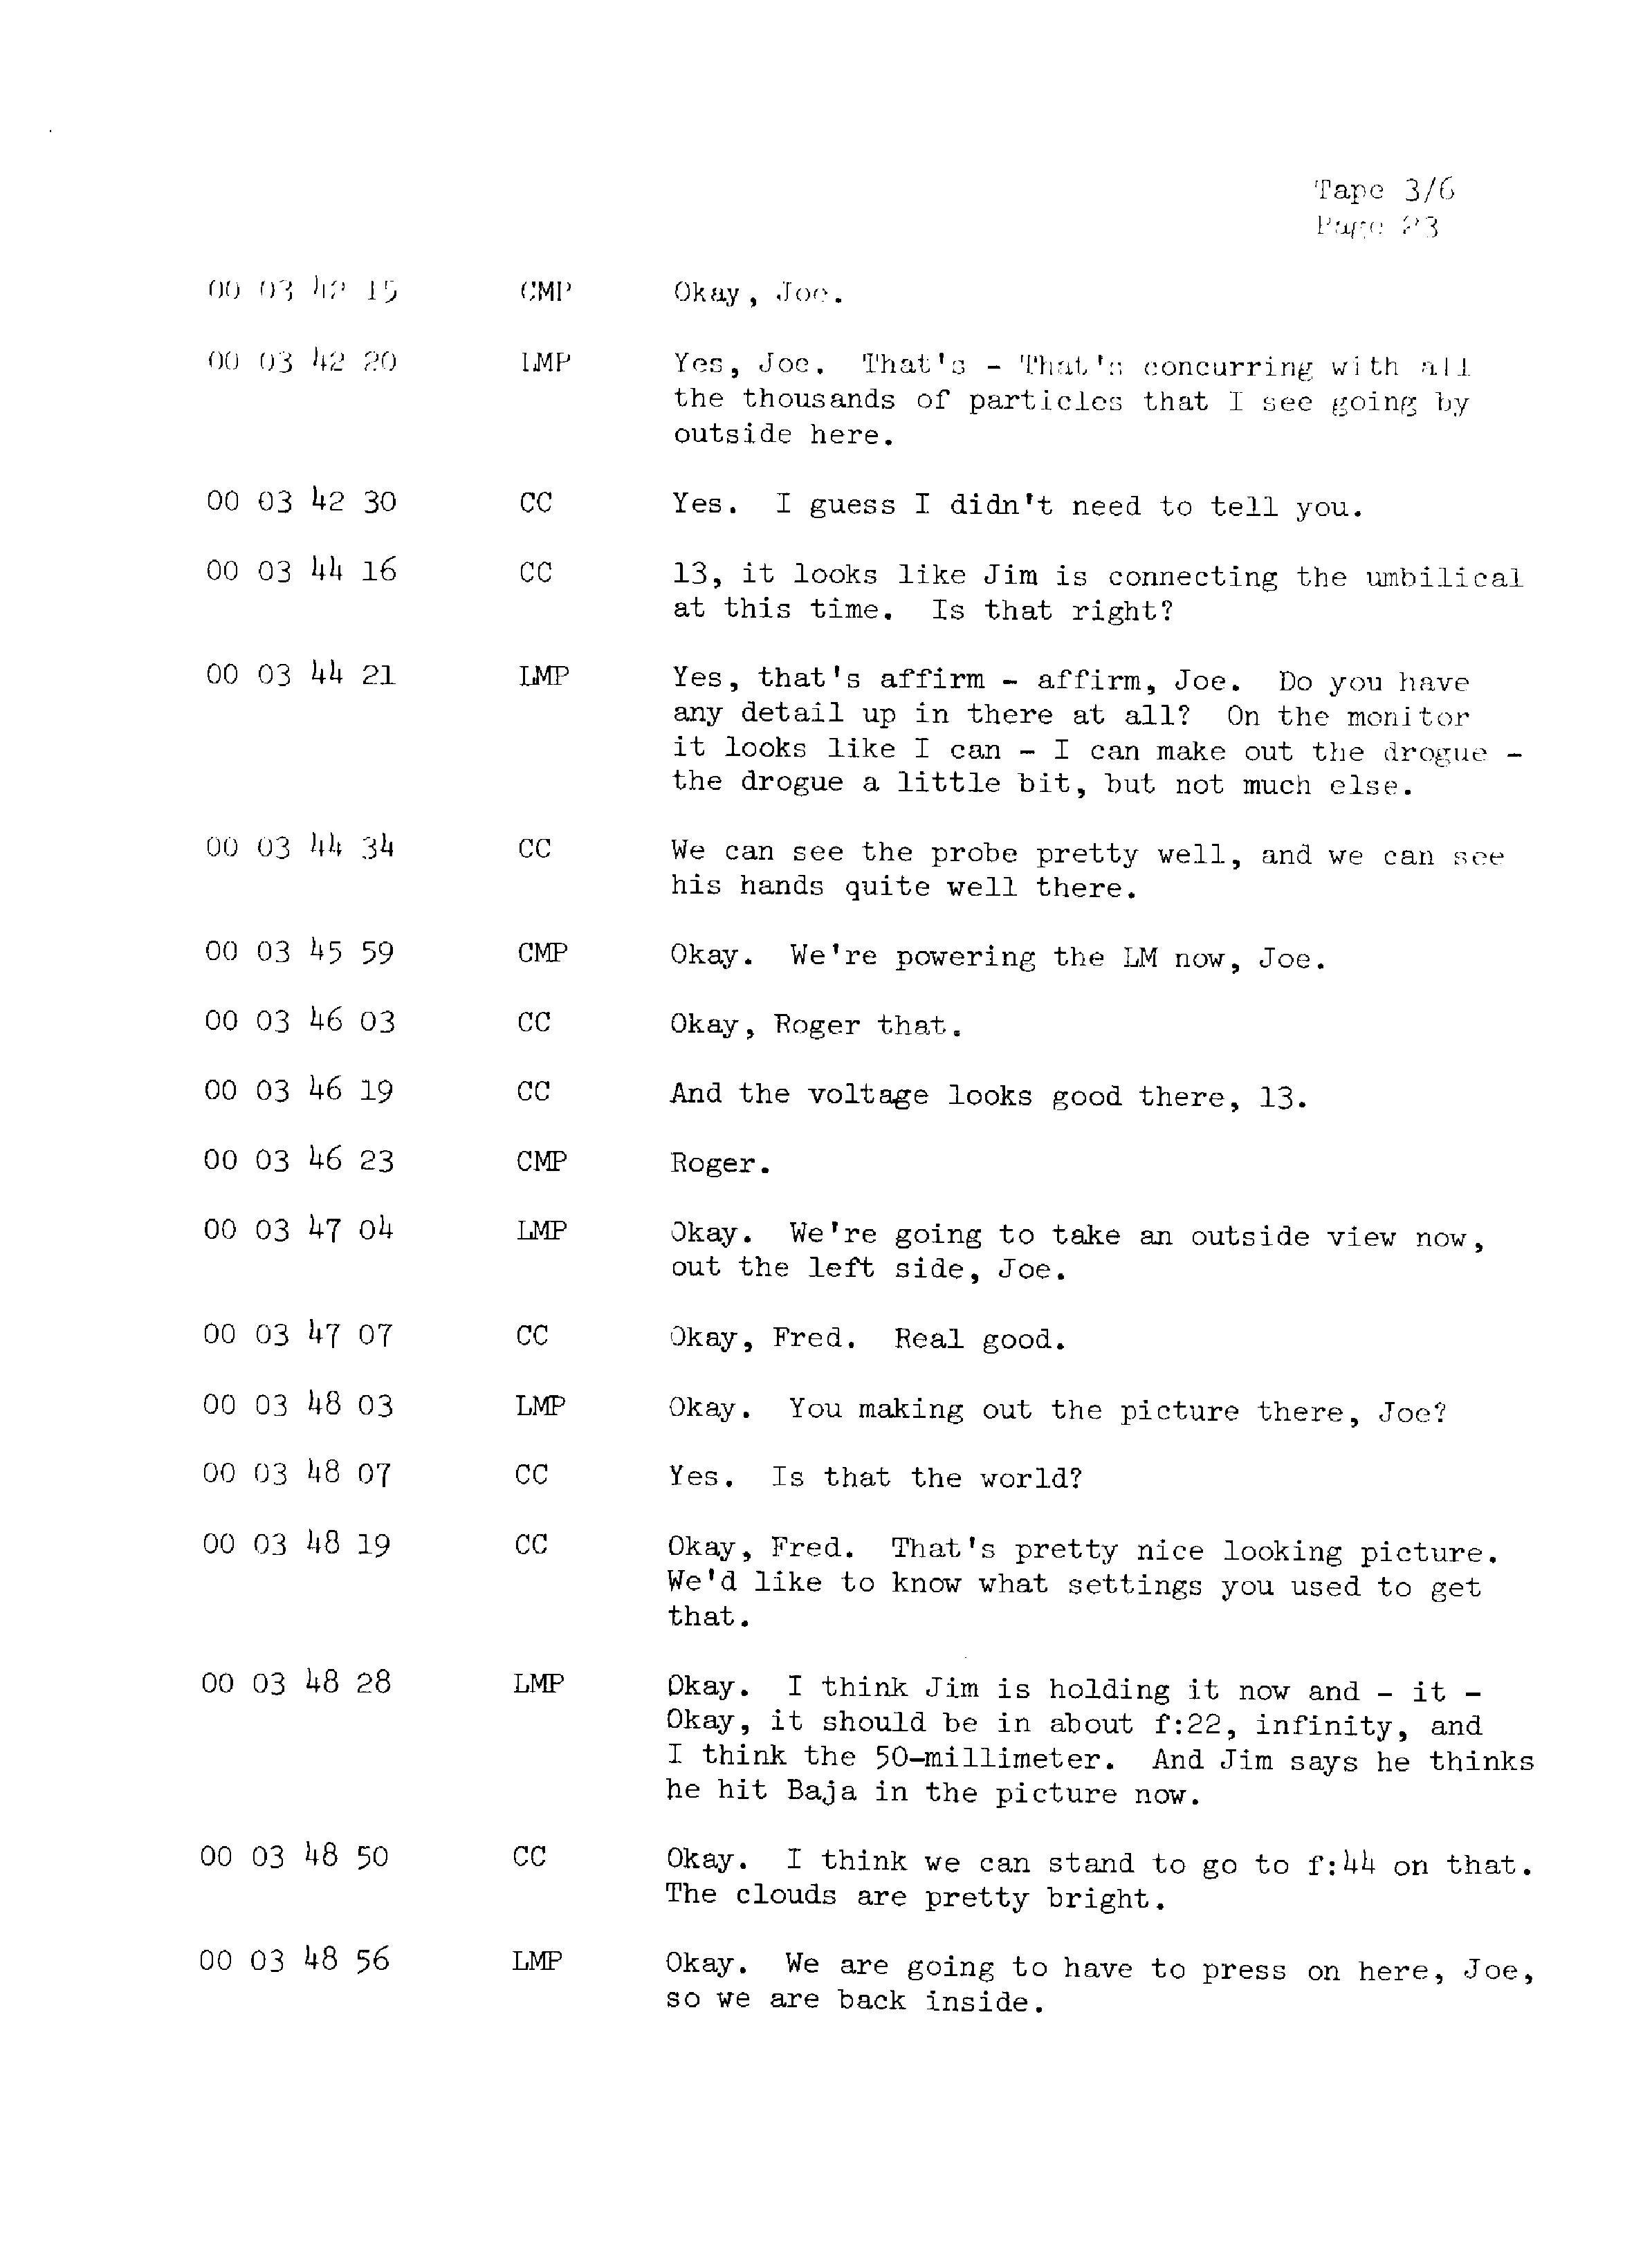 Page 30 of Apollo 13’s original transcript